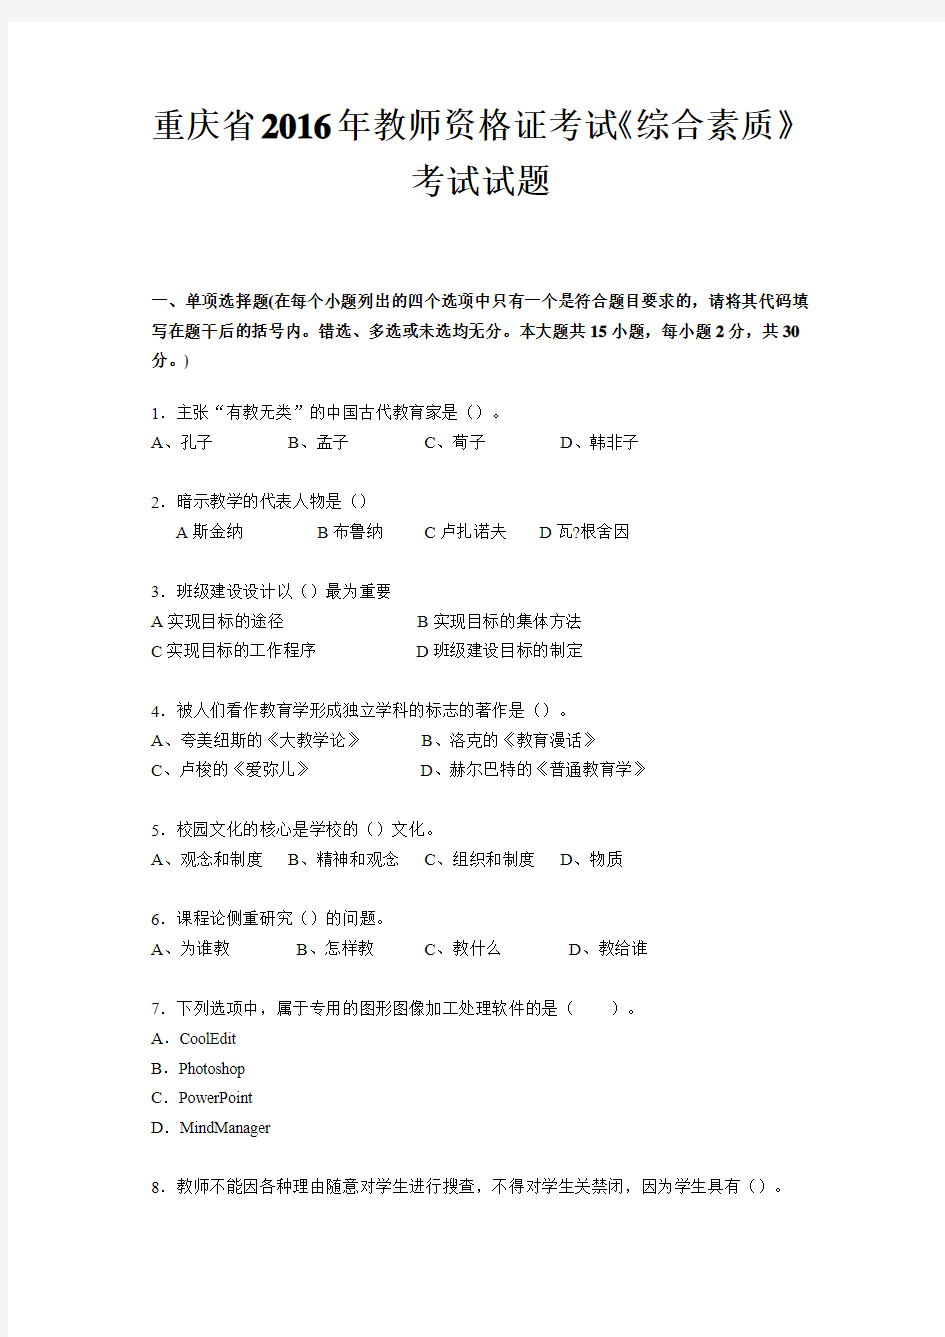 重庆省2016年教师资格证考试《综合素质》考试试题